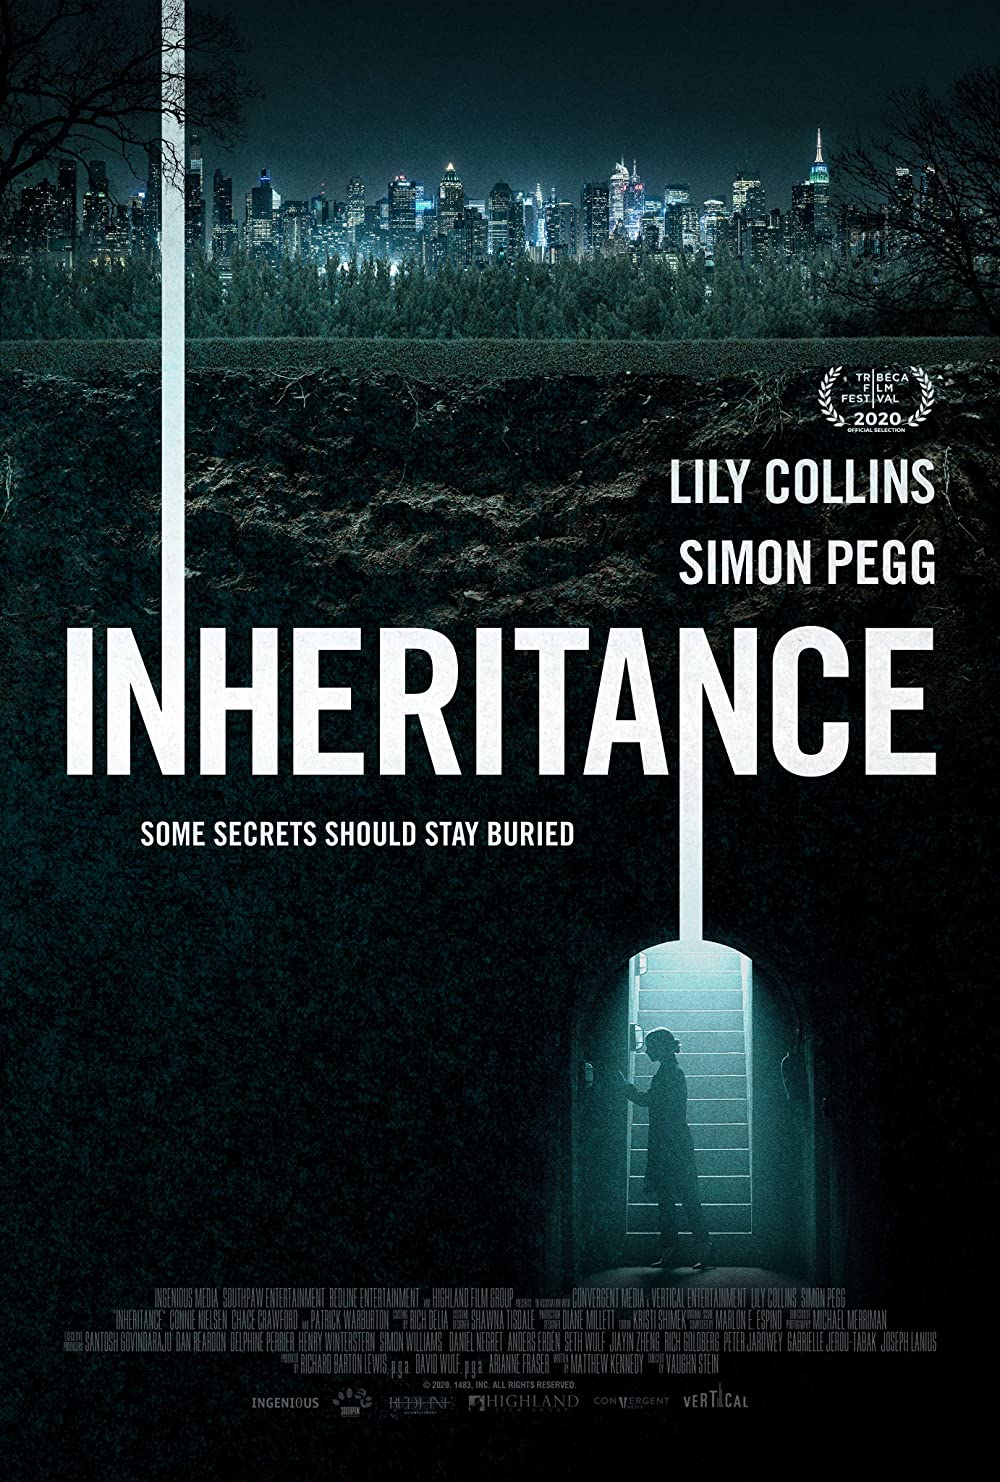 Filmbeschreibung zu The Inheritance (OV)